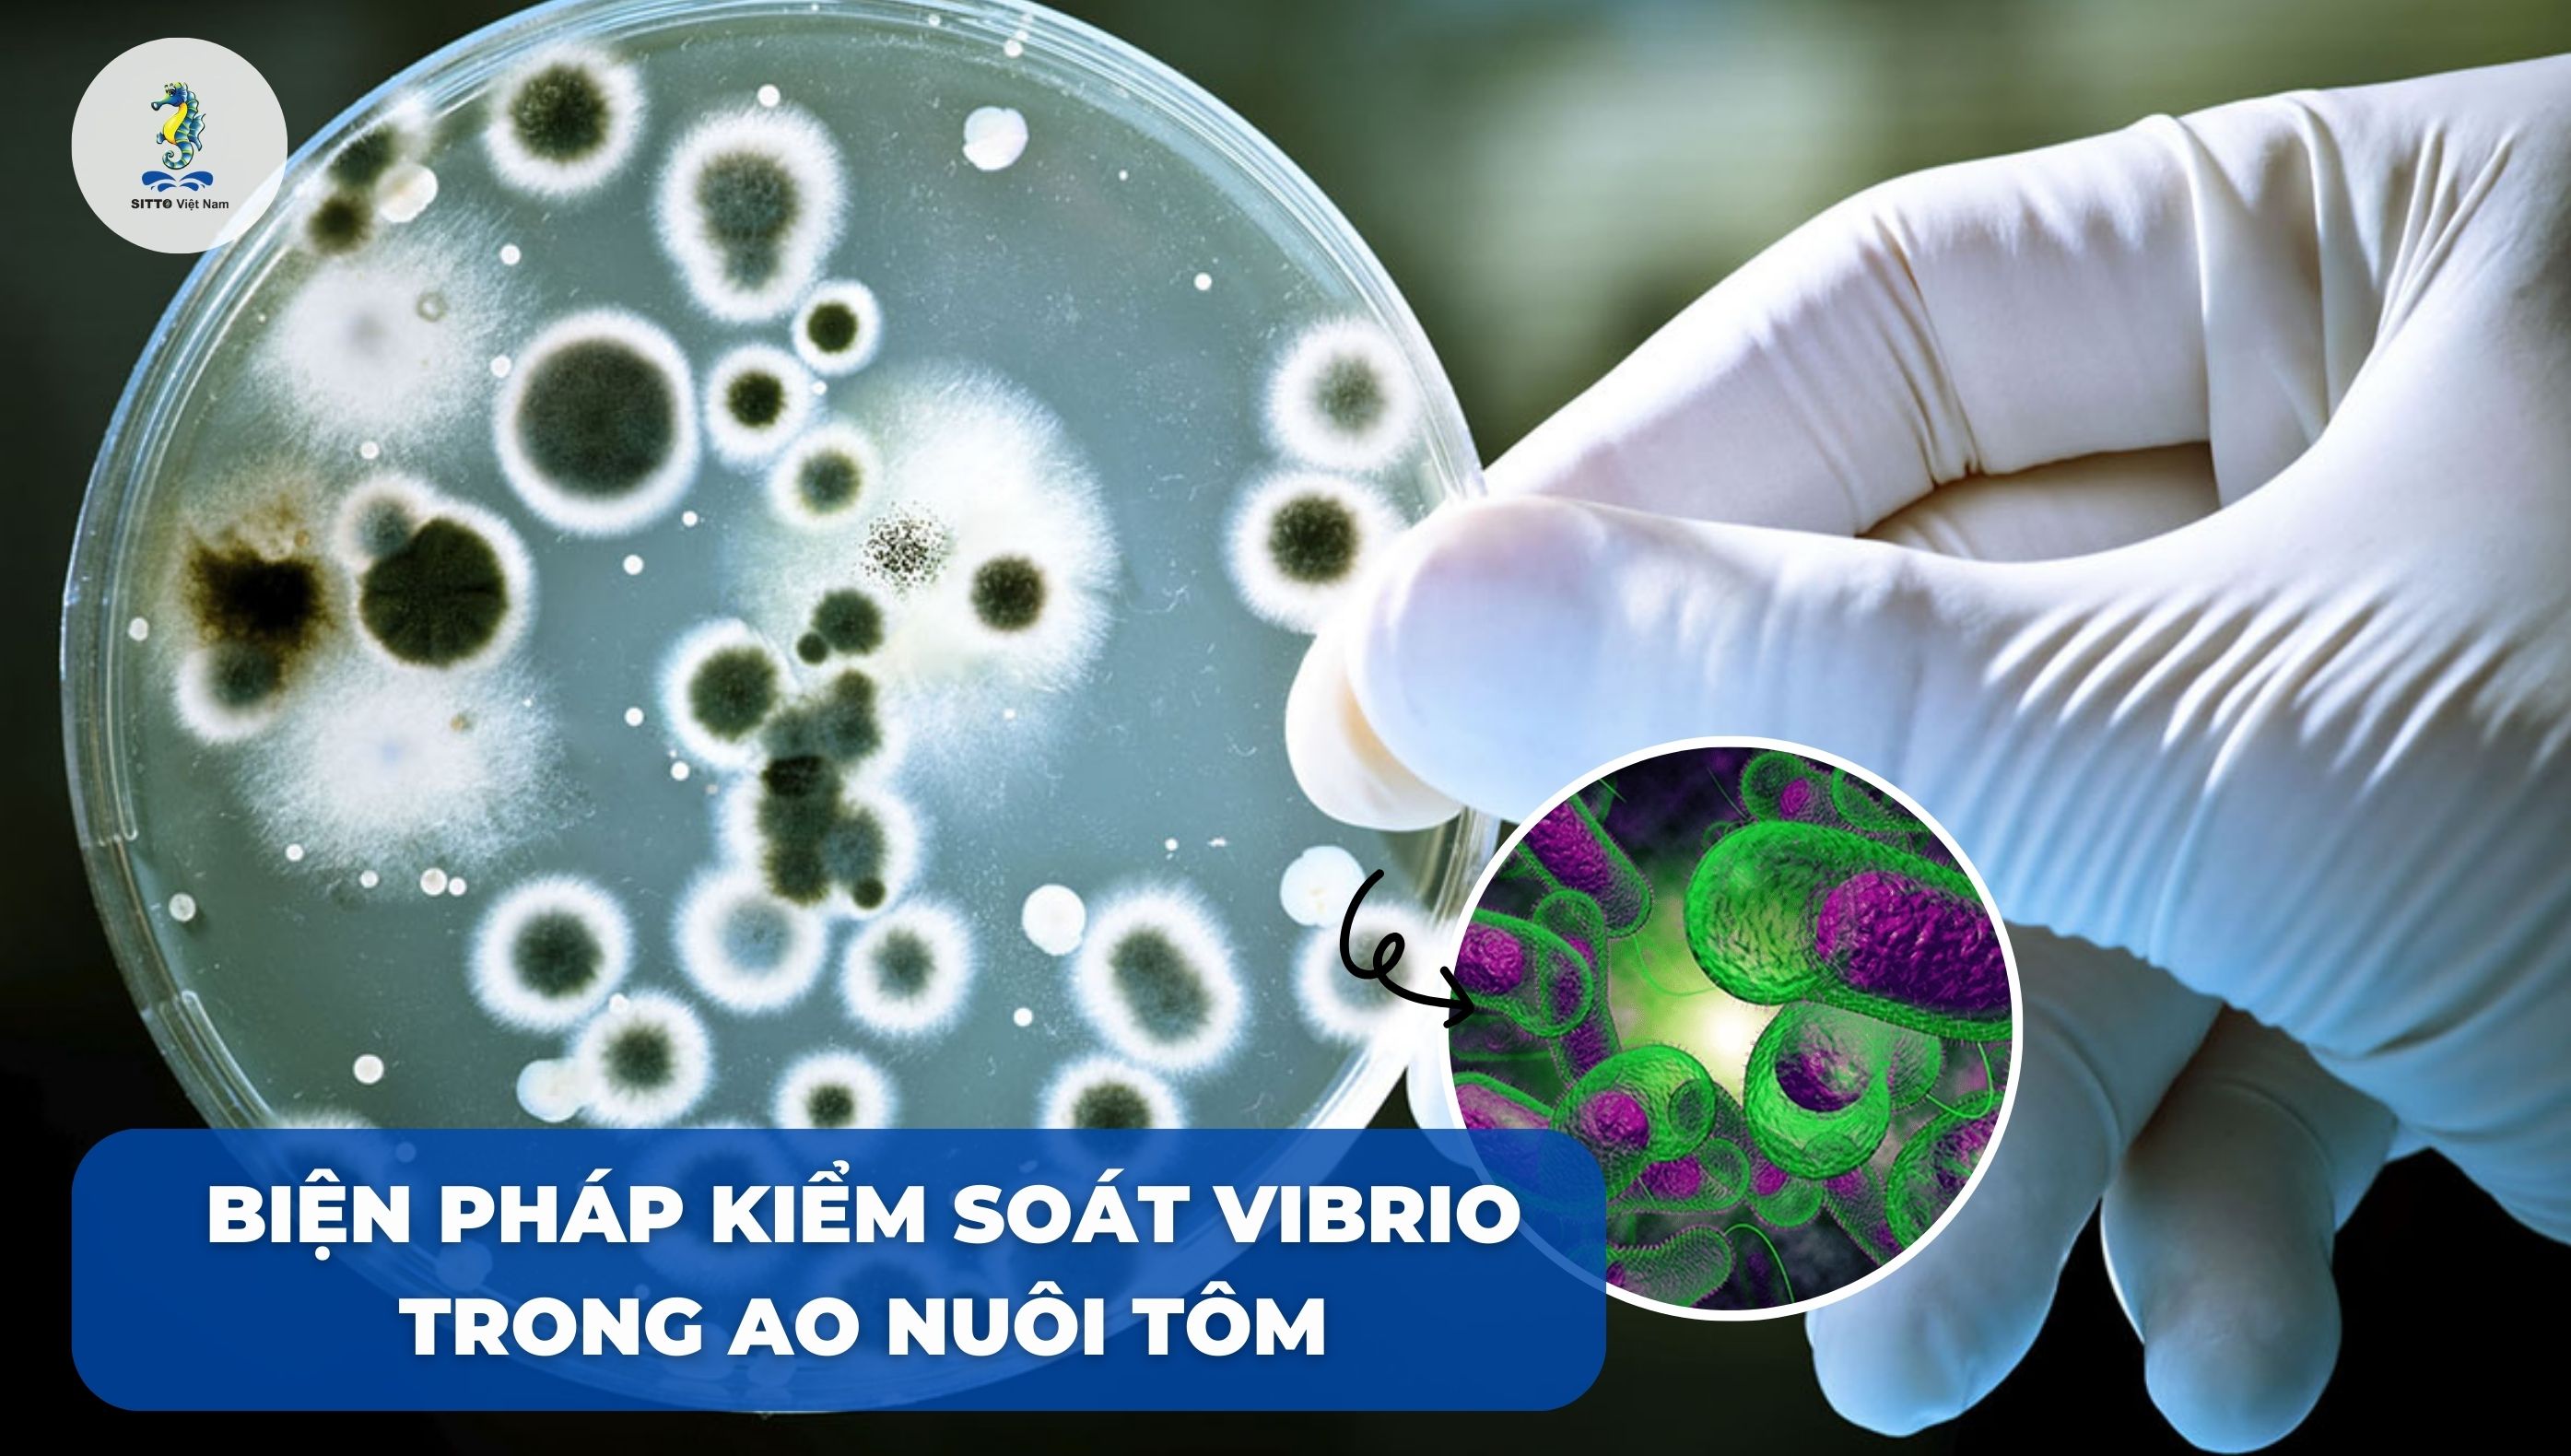 Các biện pháp kiểm soát Vibrio trong ao nuôi tôm